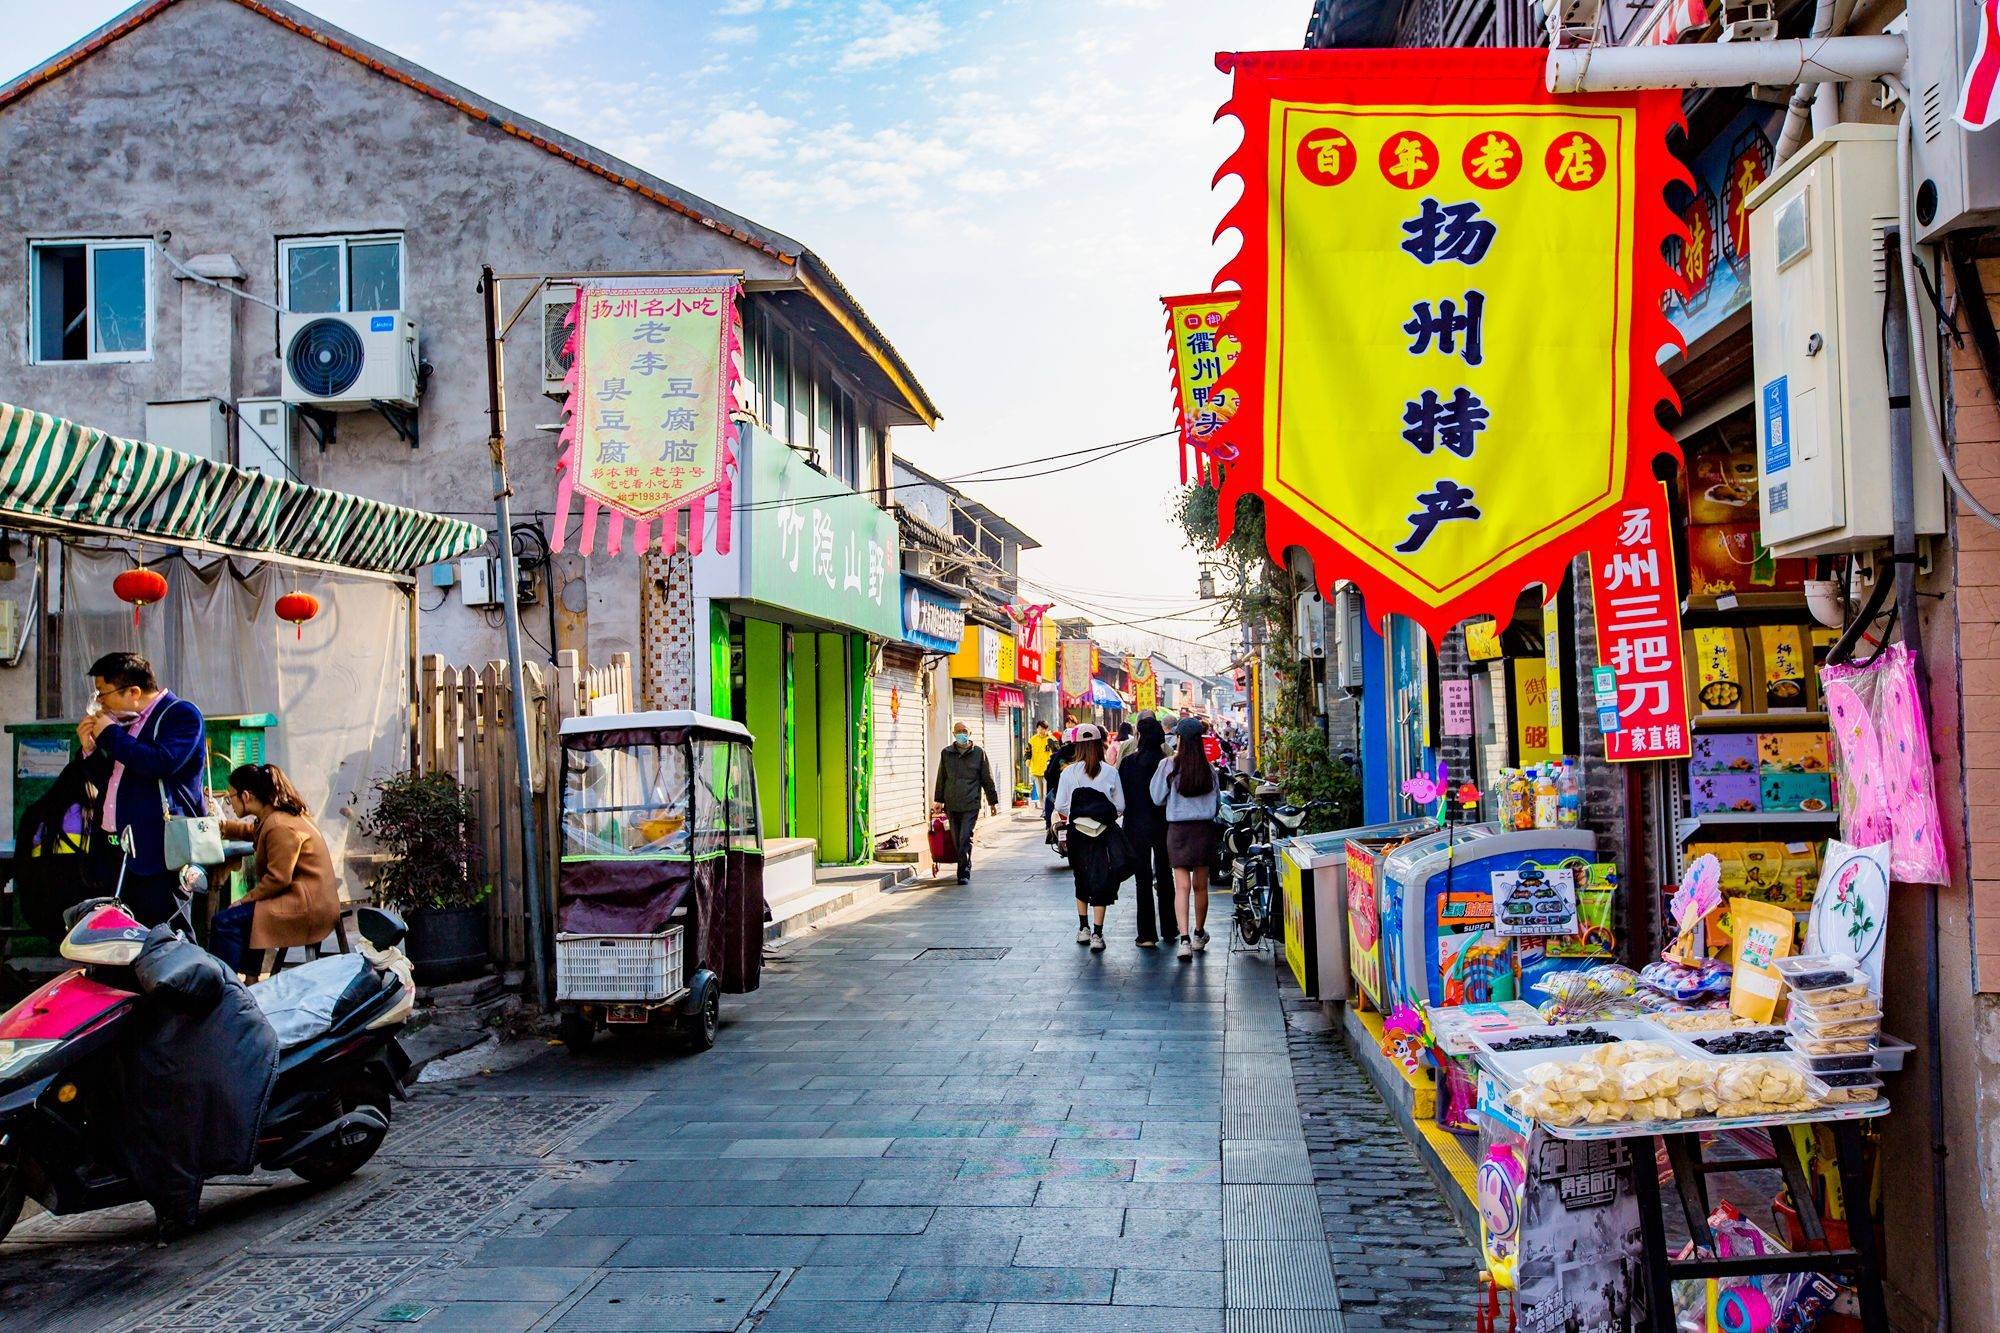 扬州彩衣街,建于明清时期的宝藏老街,沉淀着扬州人最钟爱的味道